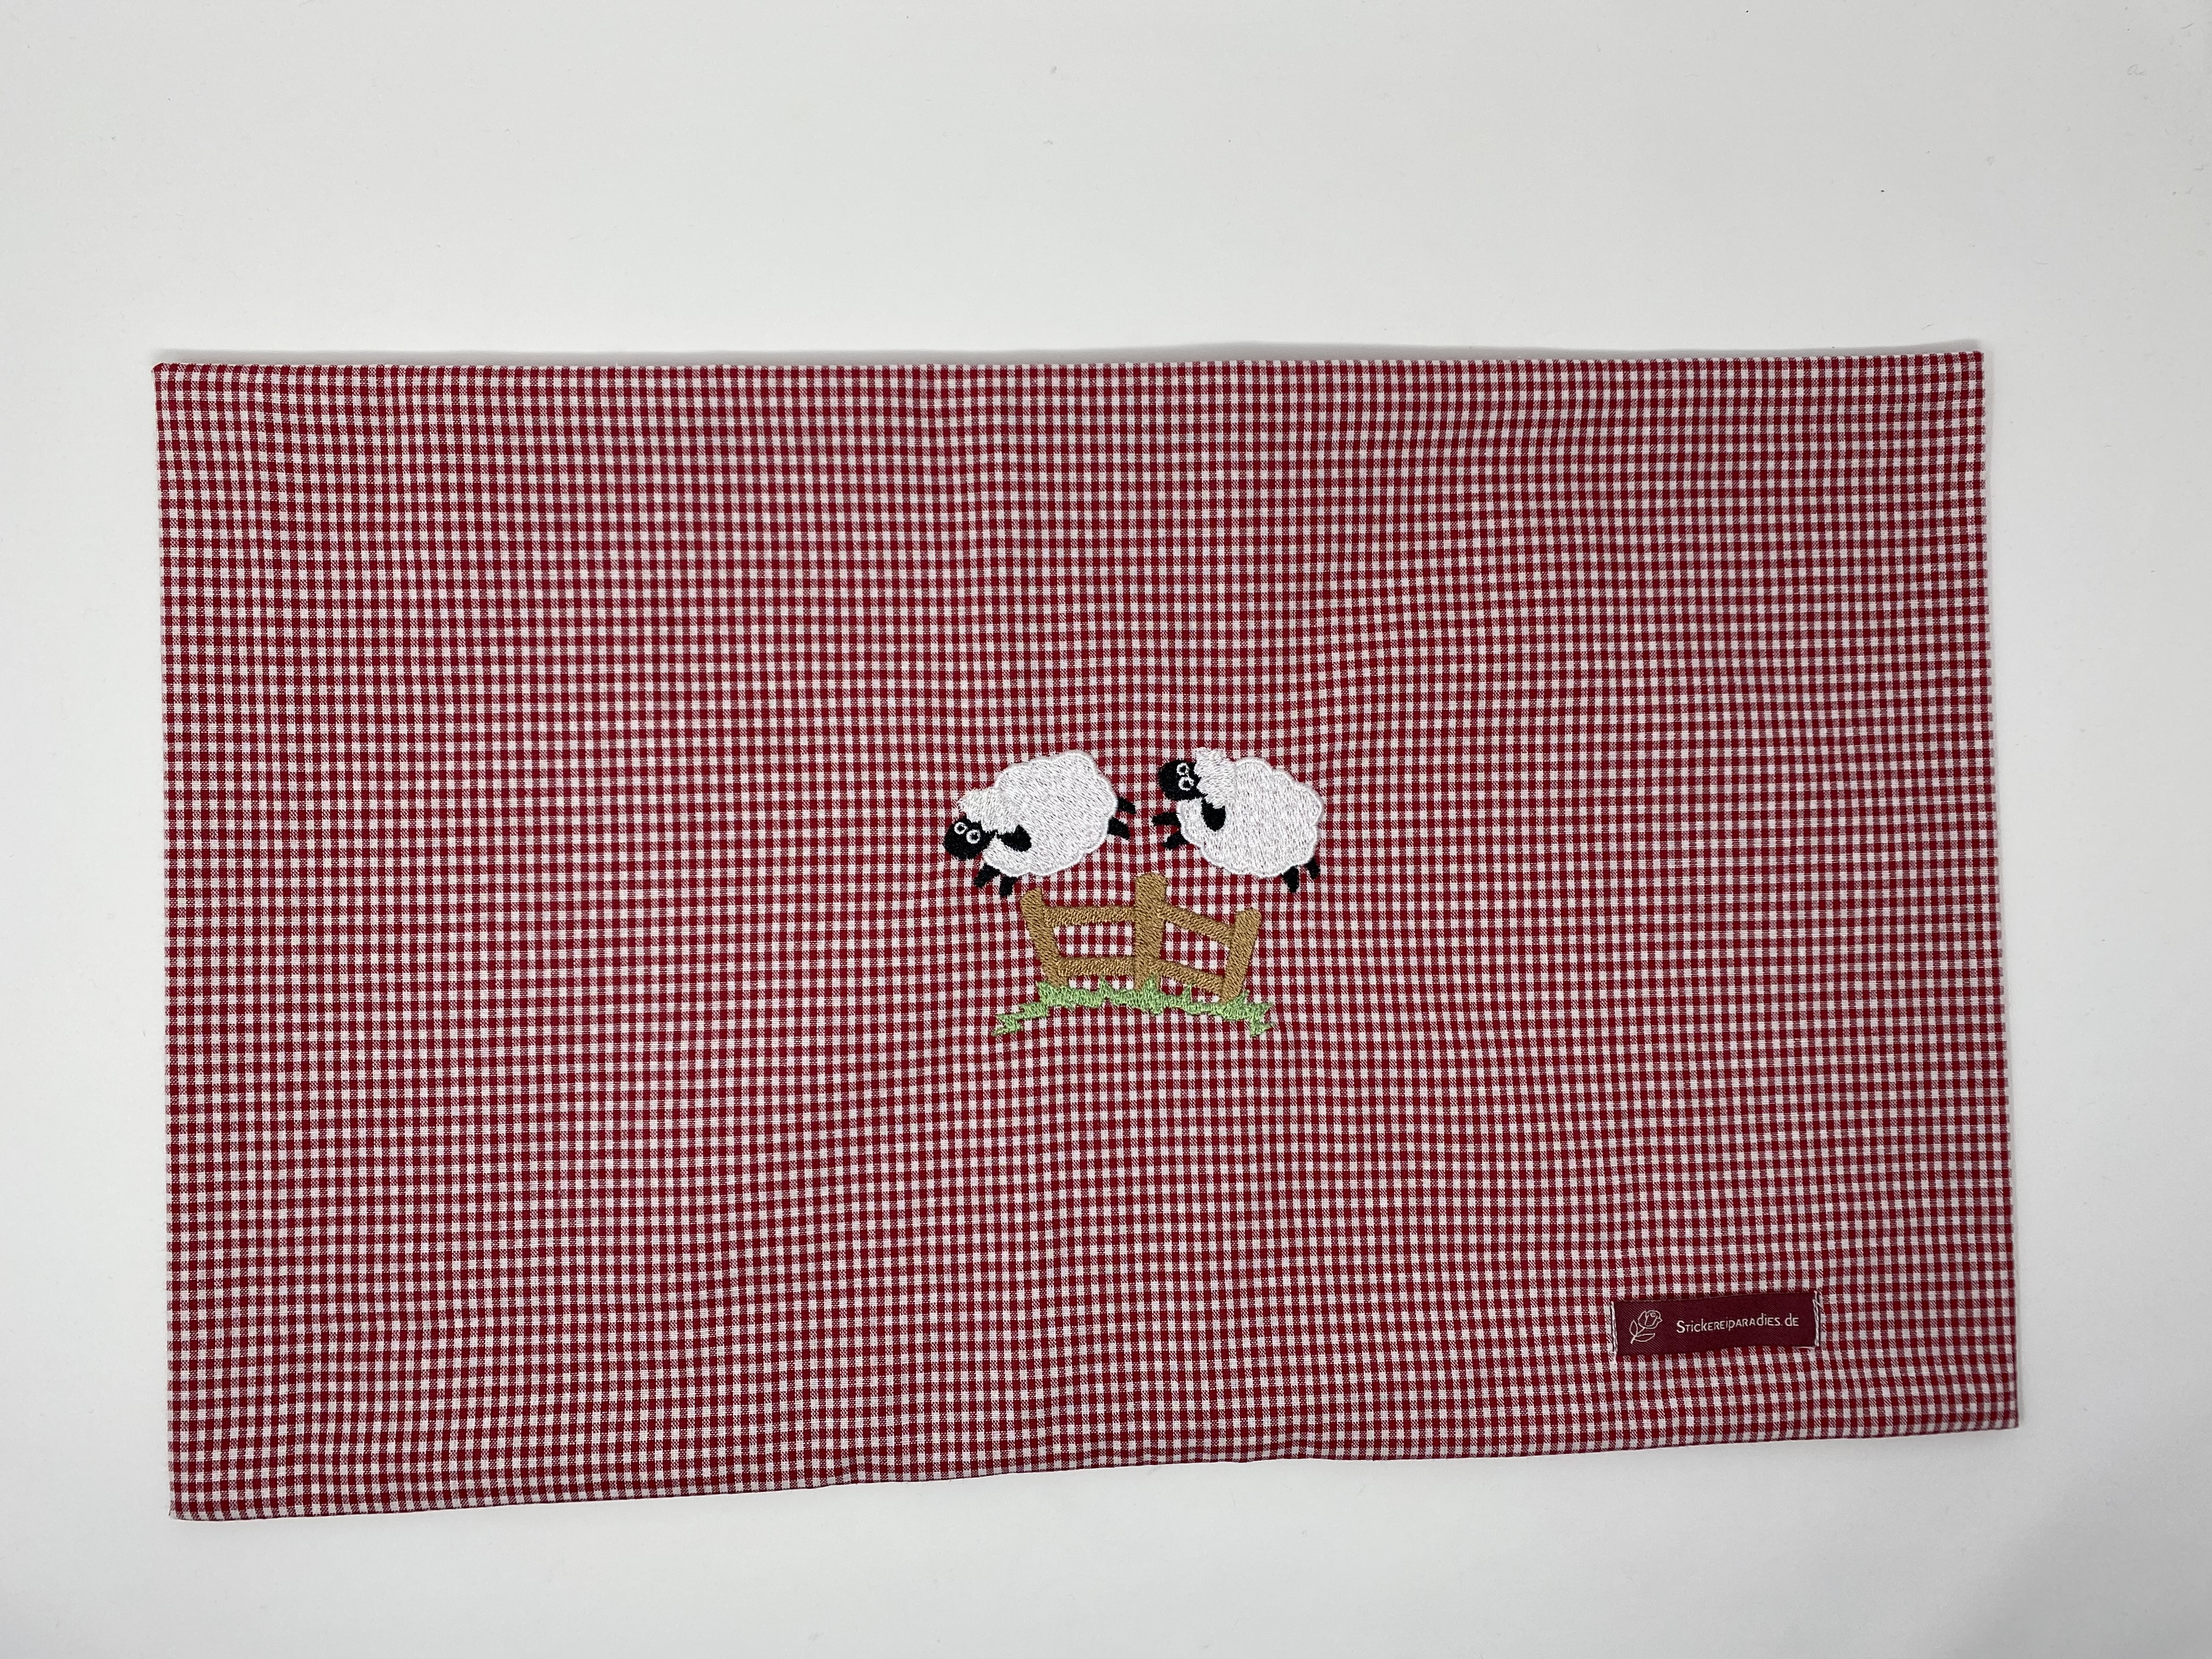  Deko Kissen Schäfchen Kissenhülle Kissenbezug 100% Baumwolle Personalisiert Name Bestickung Stickerei  